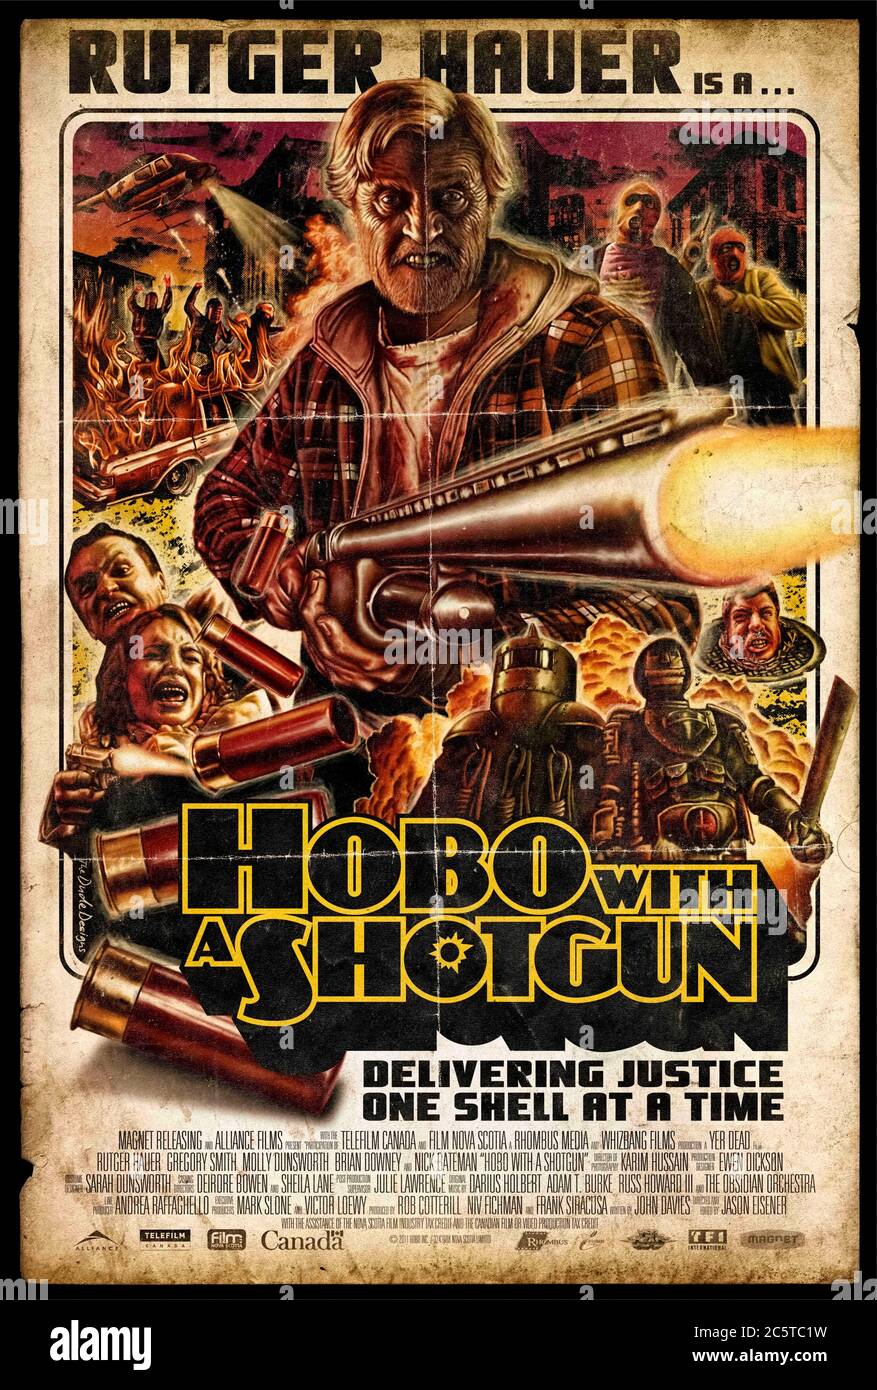 Hobo mit einer Shotgun (2011) unter der Regie von Jason Eisener mit Rutger Hauer, Pasha Ebrahimi, Robb Wells und Nick Bateman. Basierend auf einem gefälschten Trailer für den Film Grindhouse (2007), ein obdachloser Wachtwind liefert Gerechtigkeit mit seiner 20-Gauge Pump Action Shotgun. Stockfoto